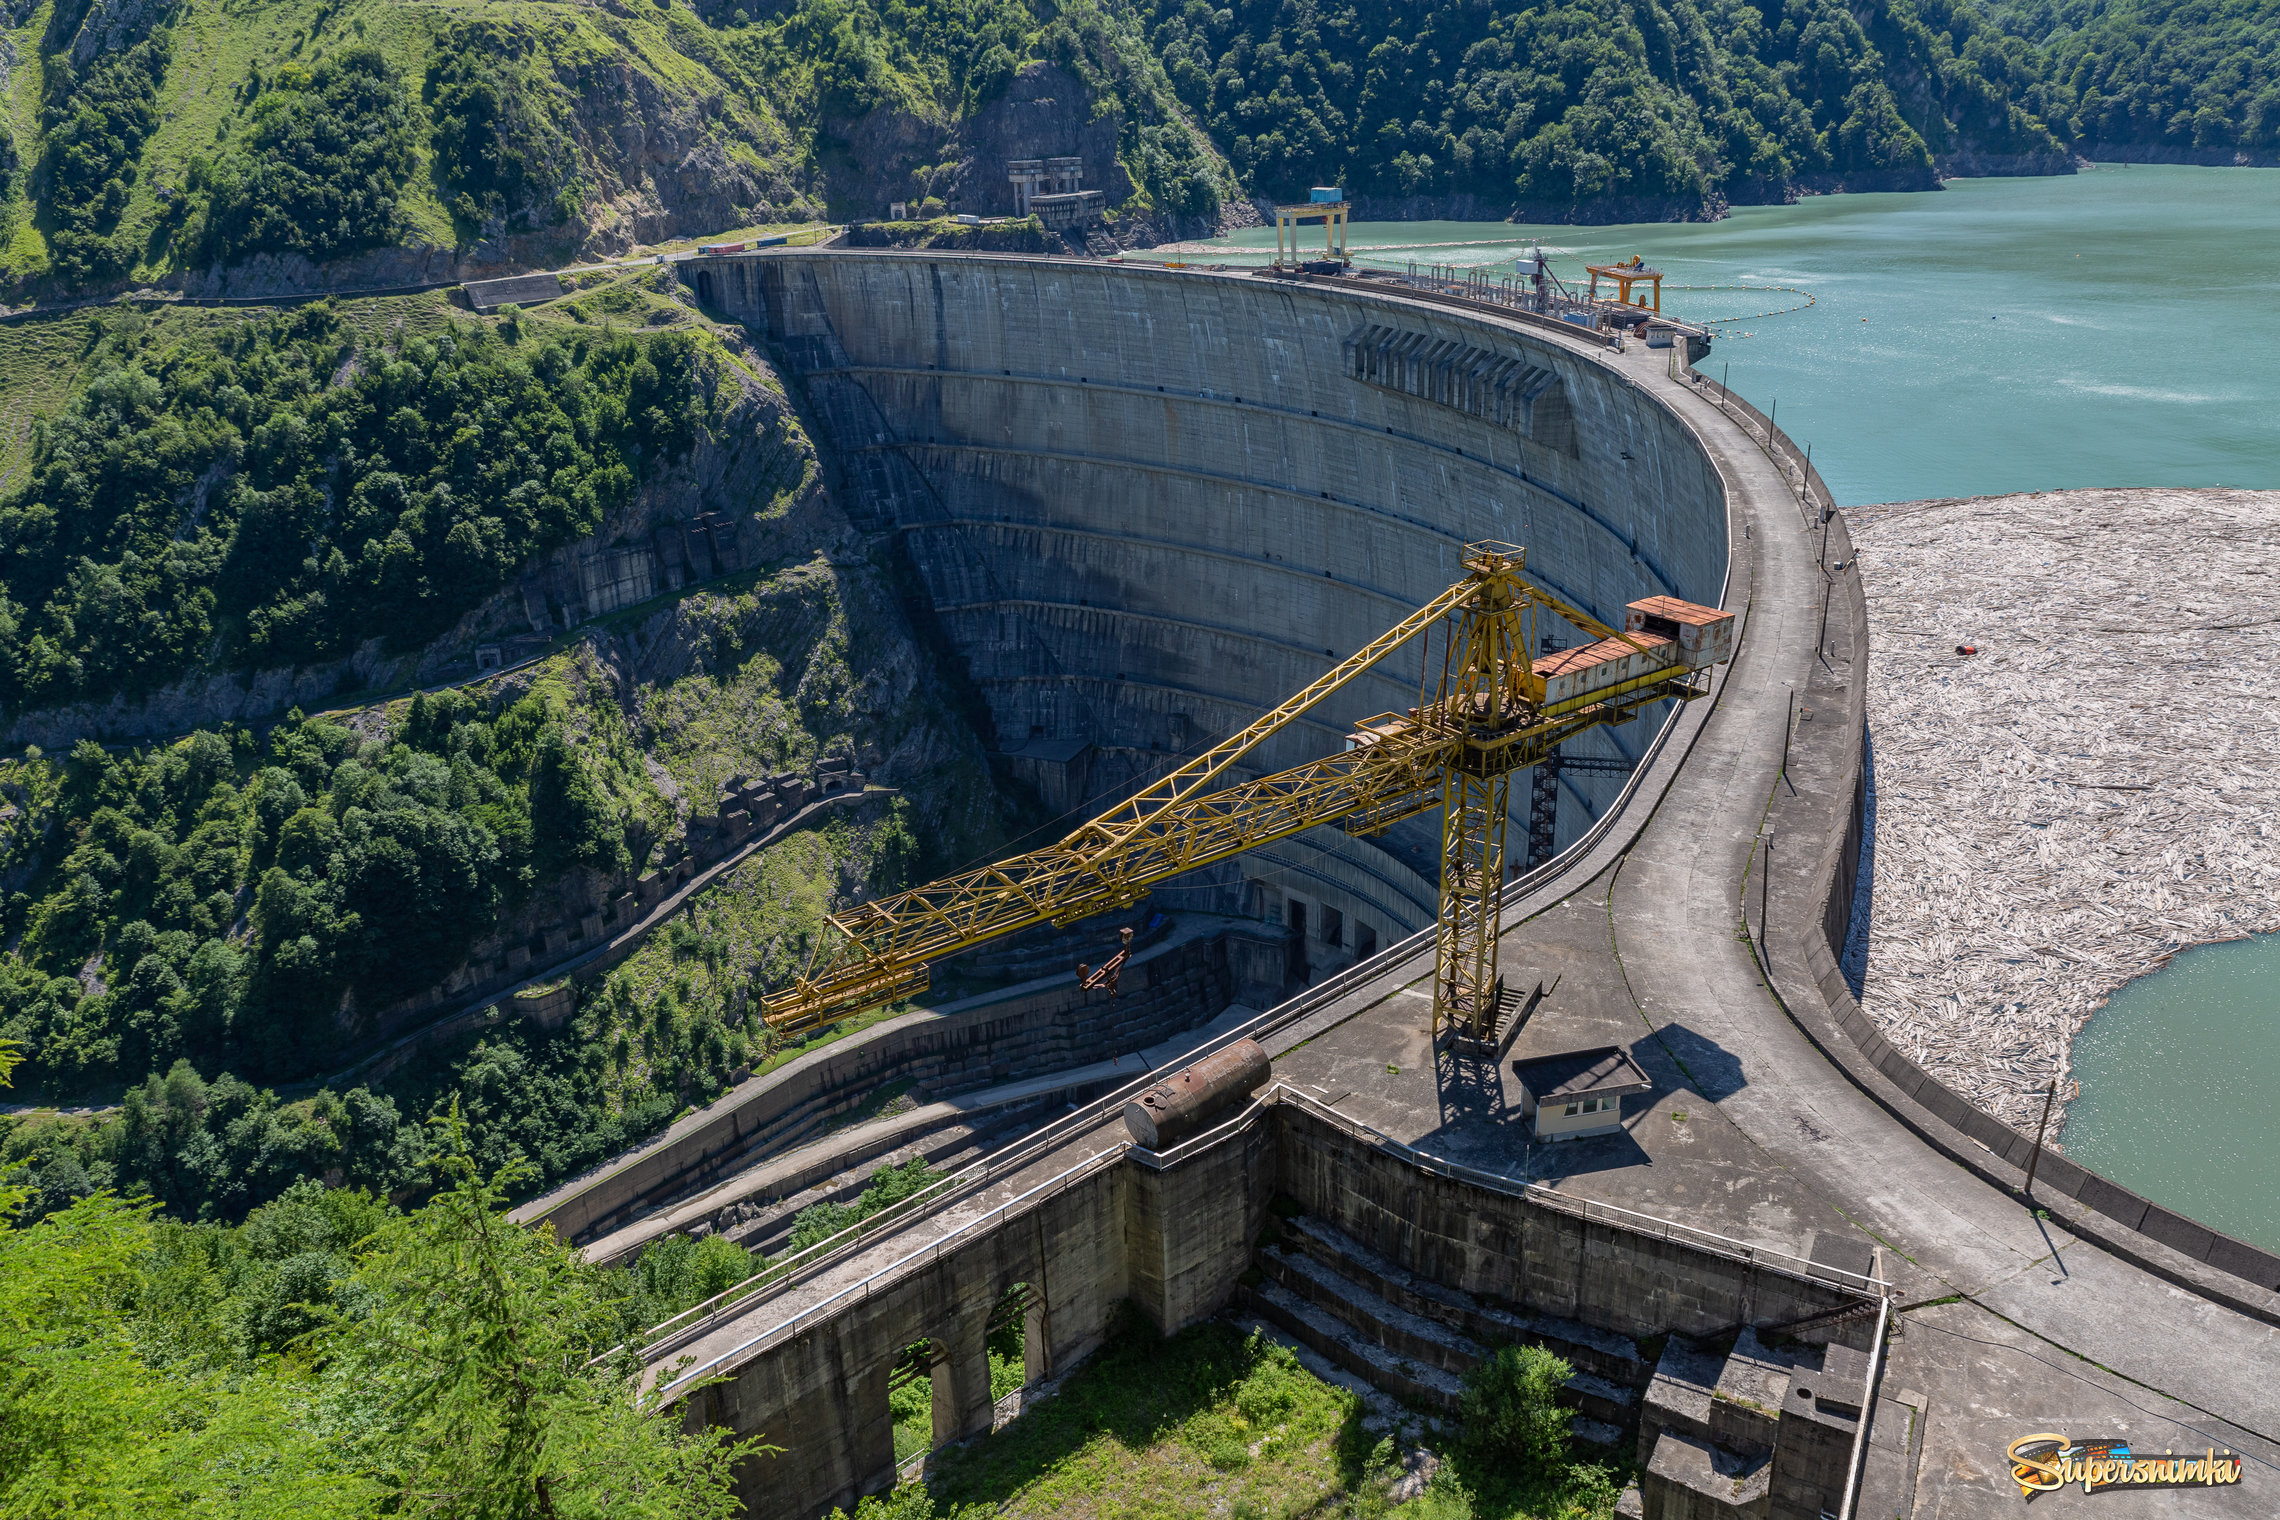 Ингу́рская ГЭС (Ингур ГЭС, Ингури ГЭС) — крупнейшая на Кавказе гидроэлектростанция. Располагается на реке Ингури на административной границе Абхазии и Самегрело-Земо Сванетии в Грузии вблизи города Джвари.